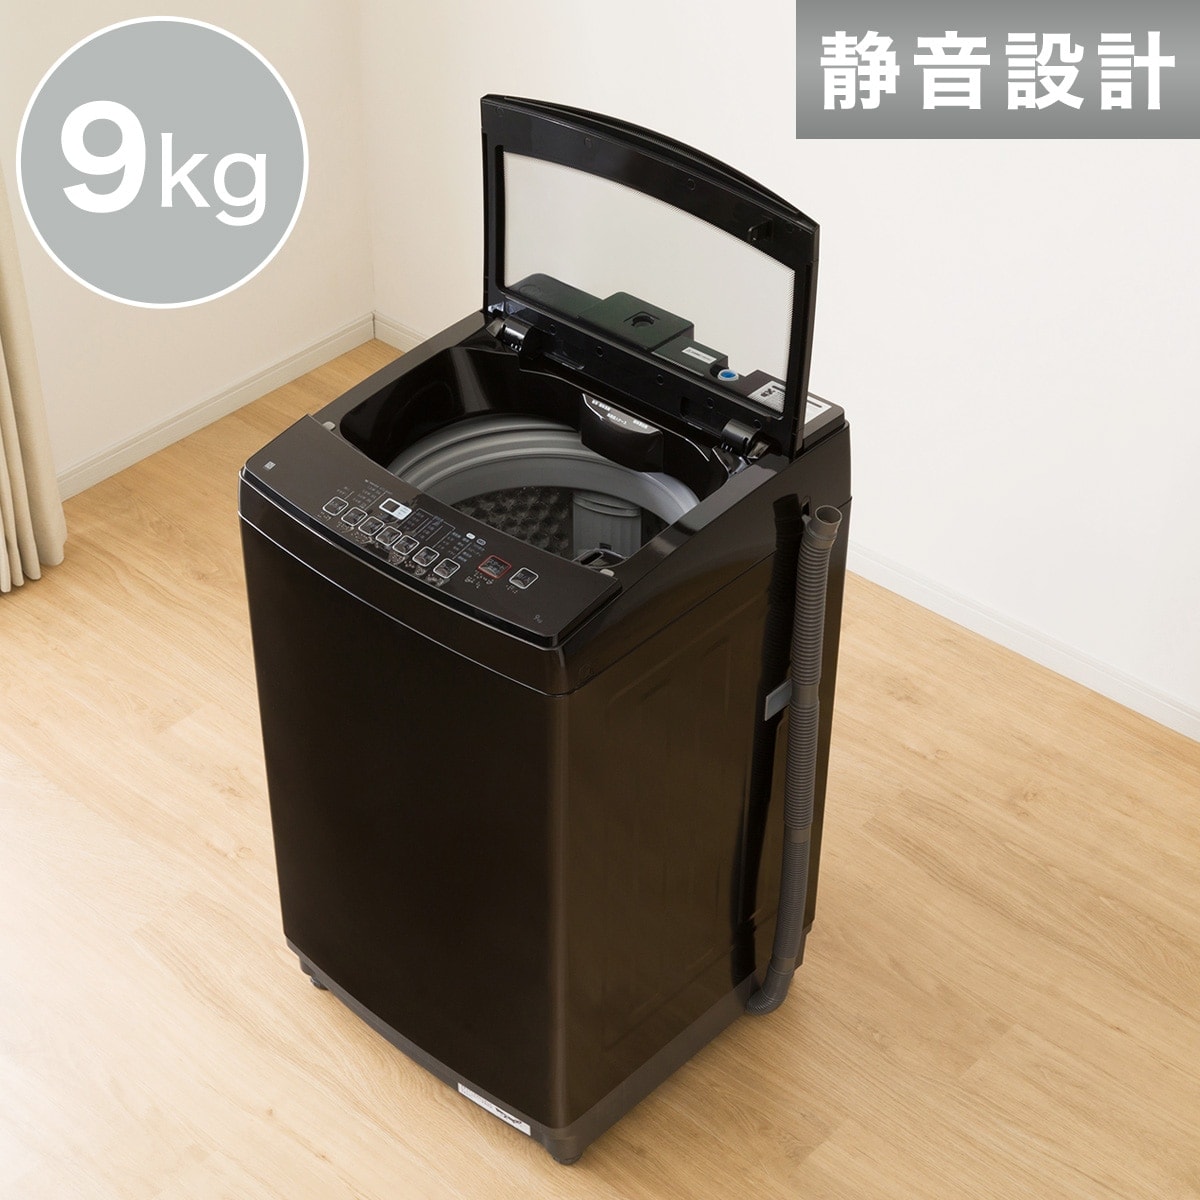 新品在庫あニトリ 洗濯機 NTR60 6kg 2021年製 高年式 家電 H558 洗濯機